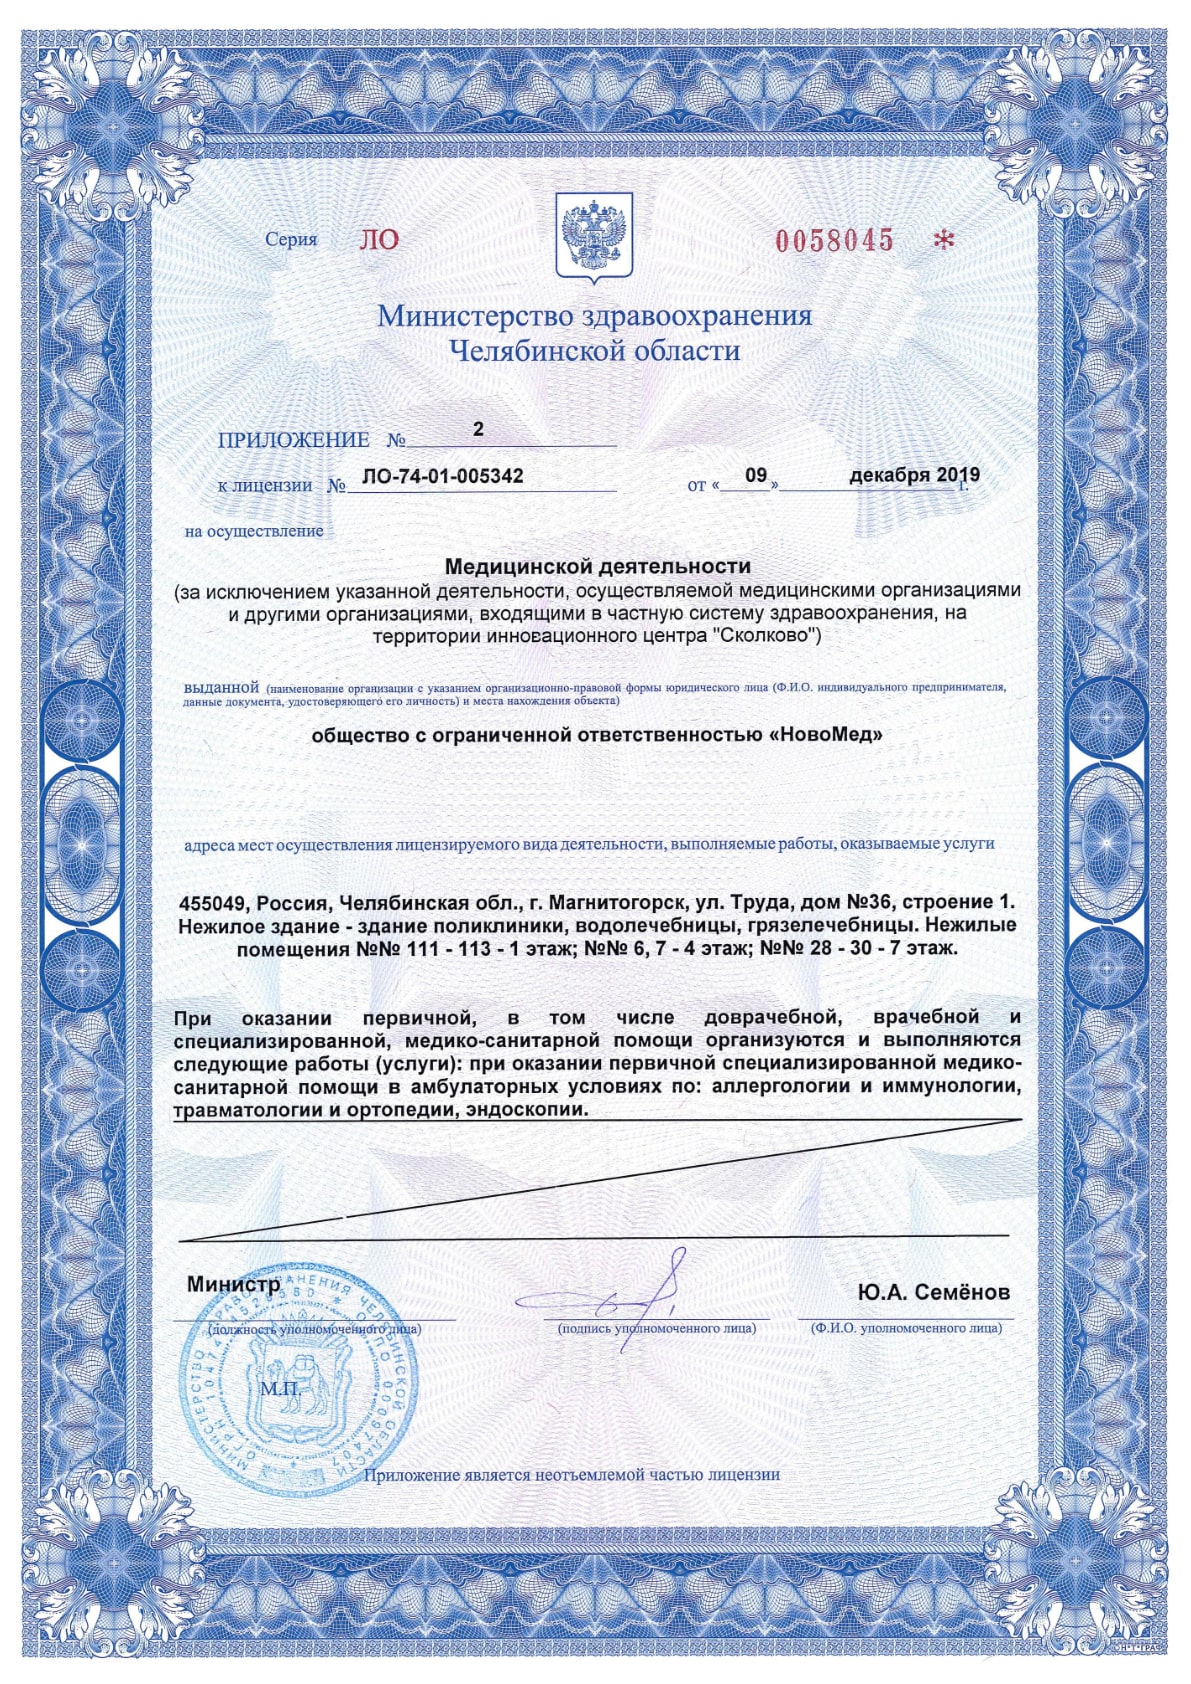 Приложение №2 к лицензии ЛО-74-01-005342